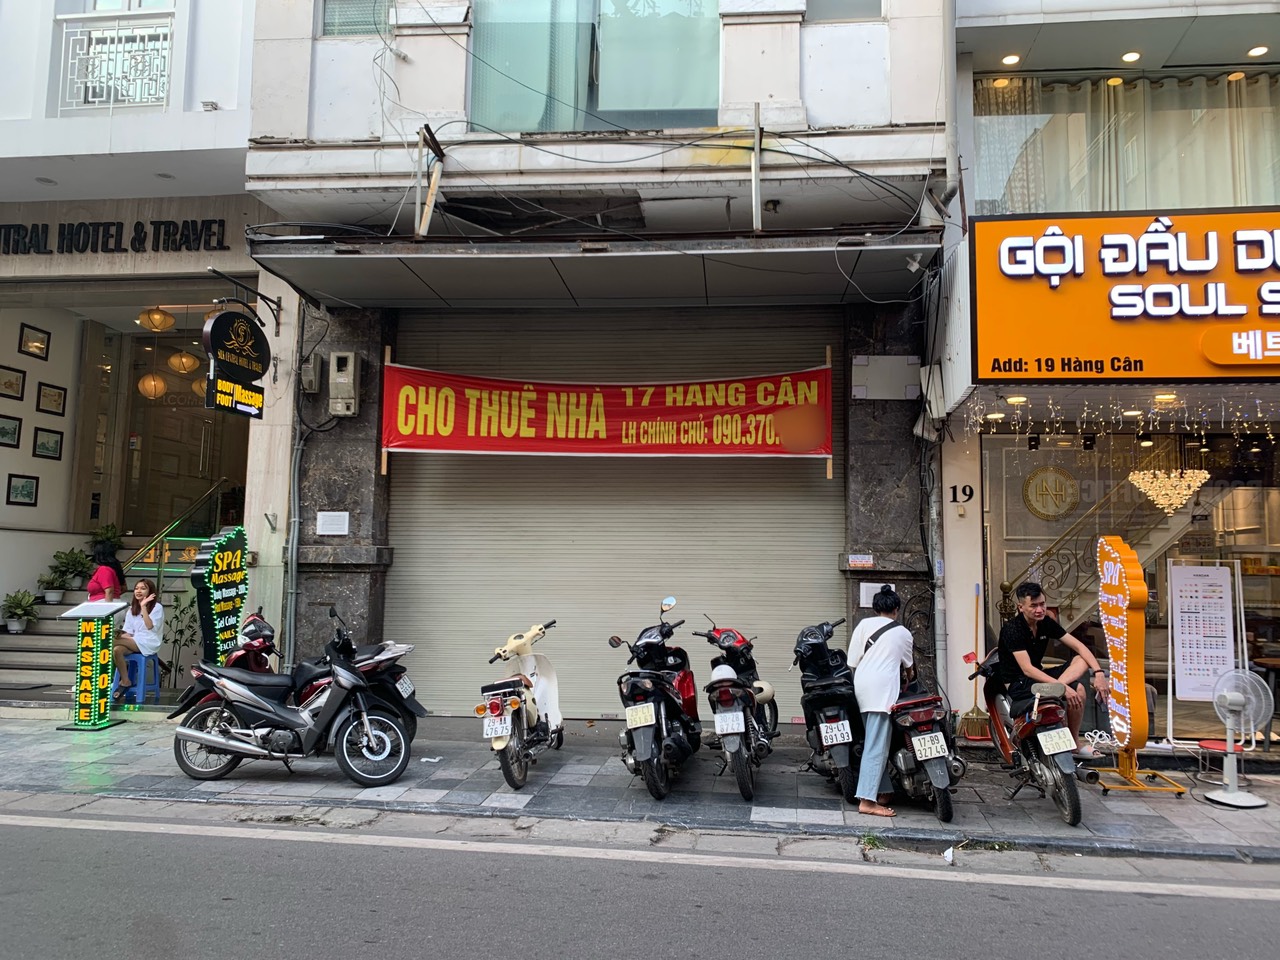 Hà Nội: Bán hàng ế ẩm, nhiều chủ cửa hàng trả mặt bằng kinh doanh - Ảnh 1.